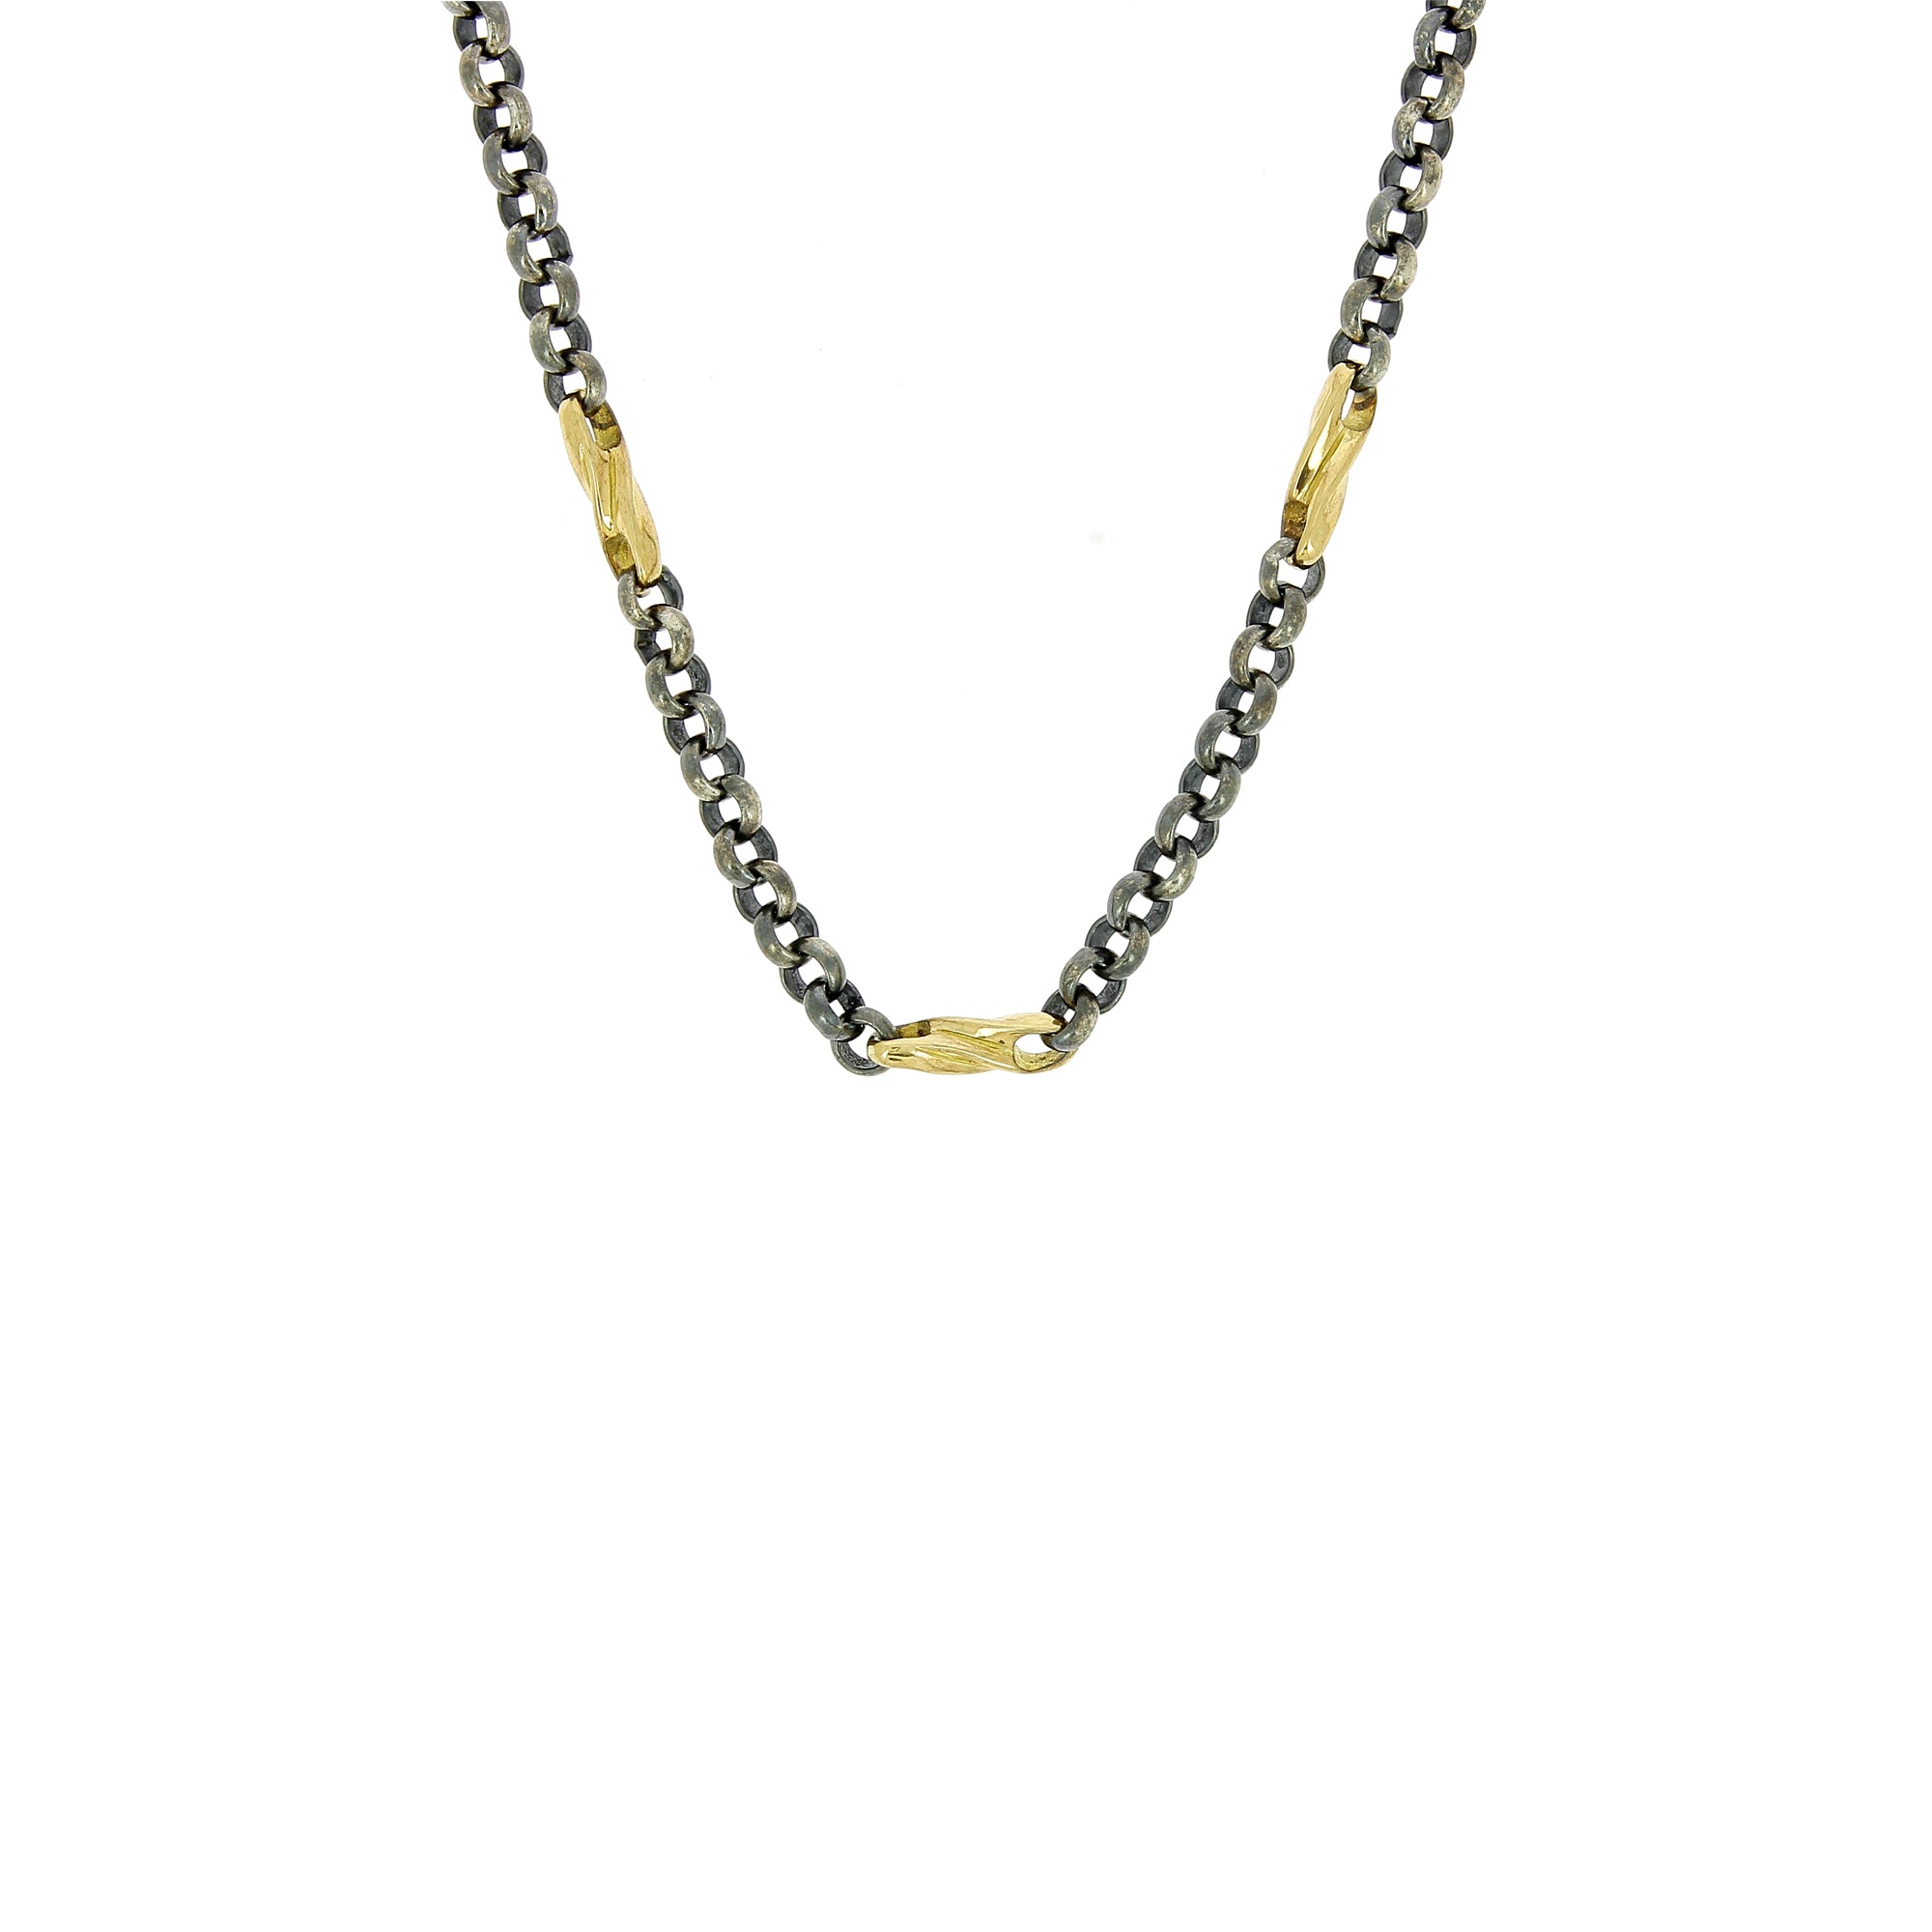 Halskette mit Kettengliedern aus Silber und Gelbgold